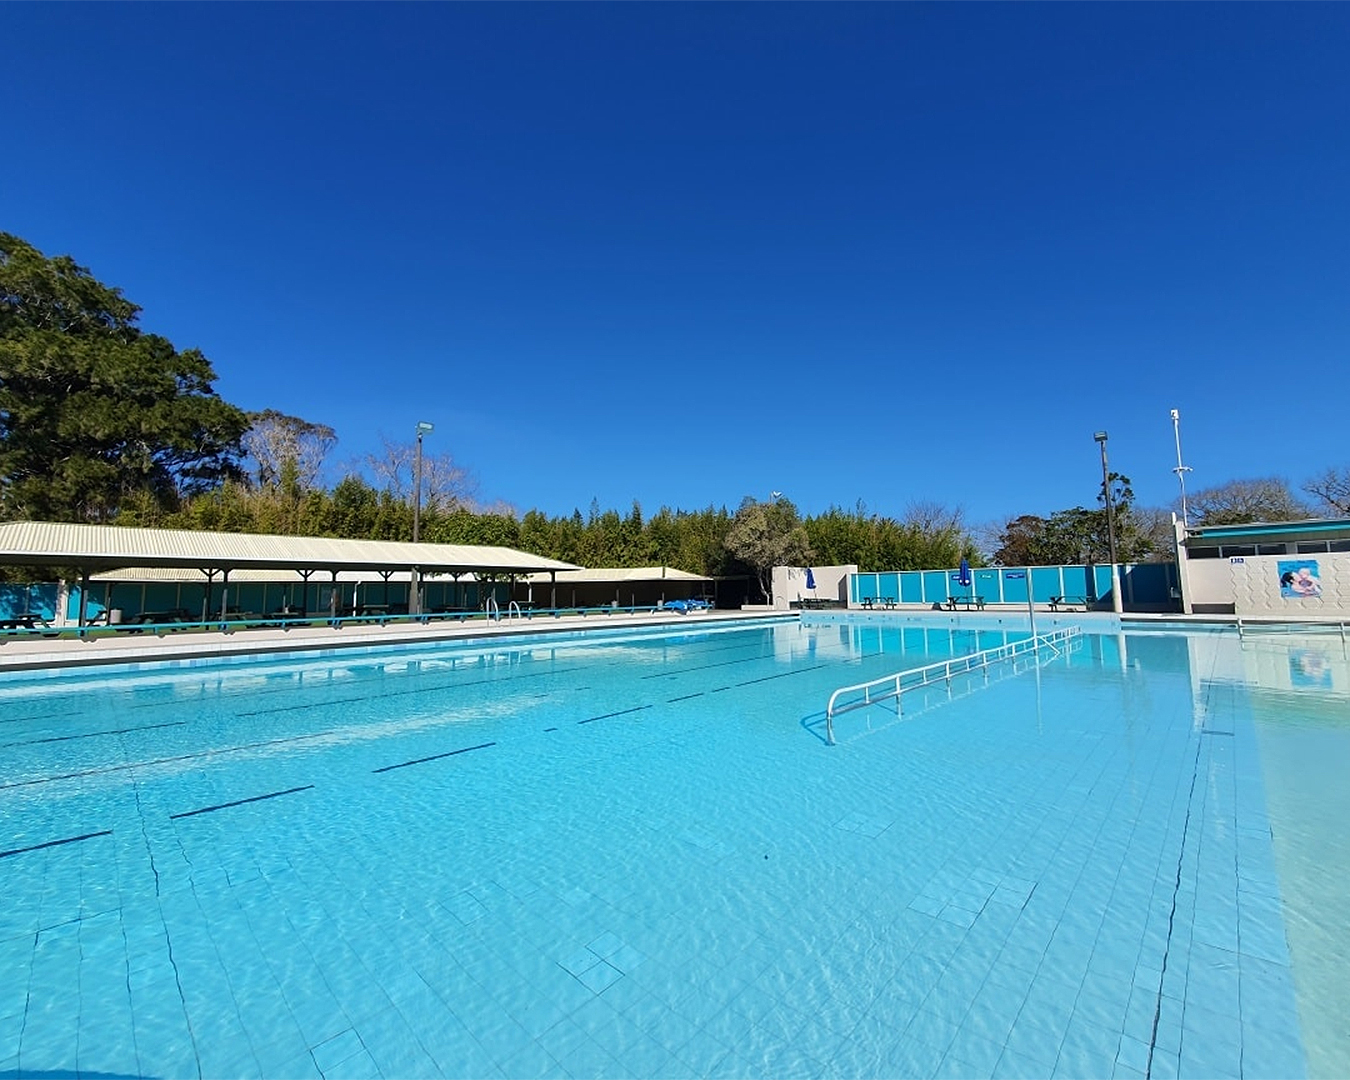 A view of the inviting pool at Parakai Springs.